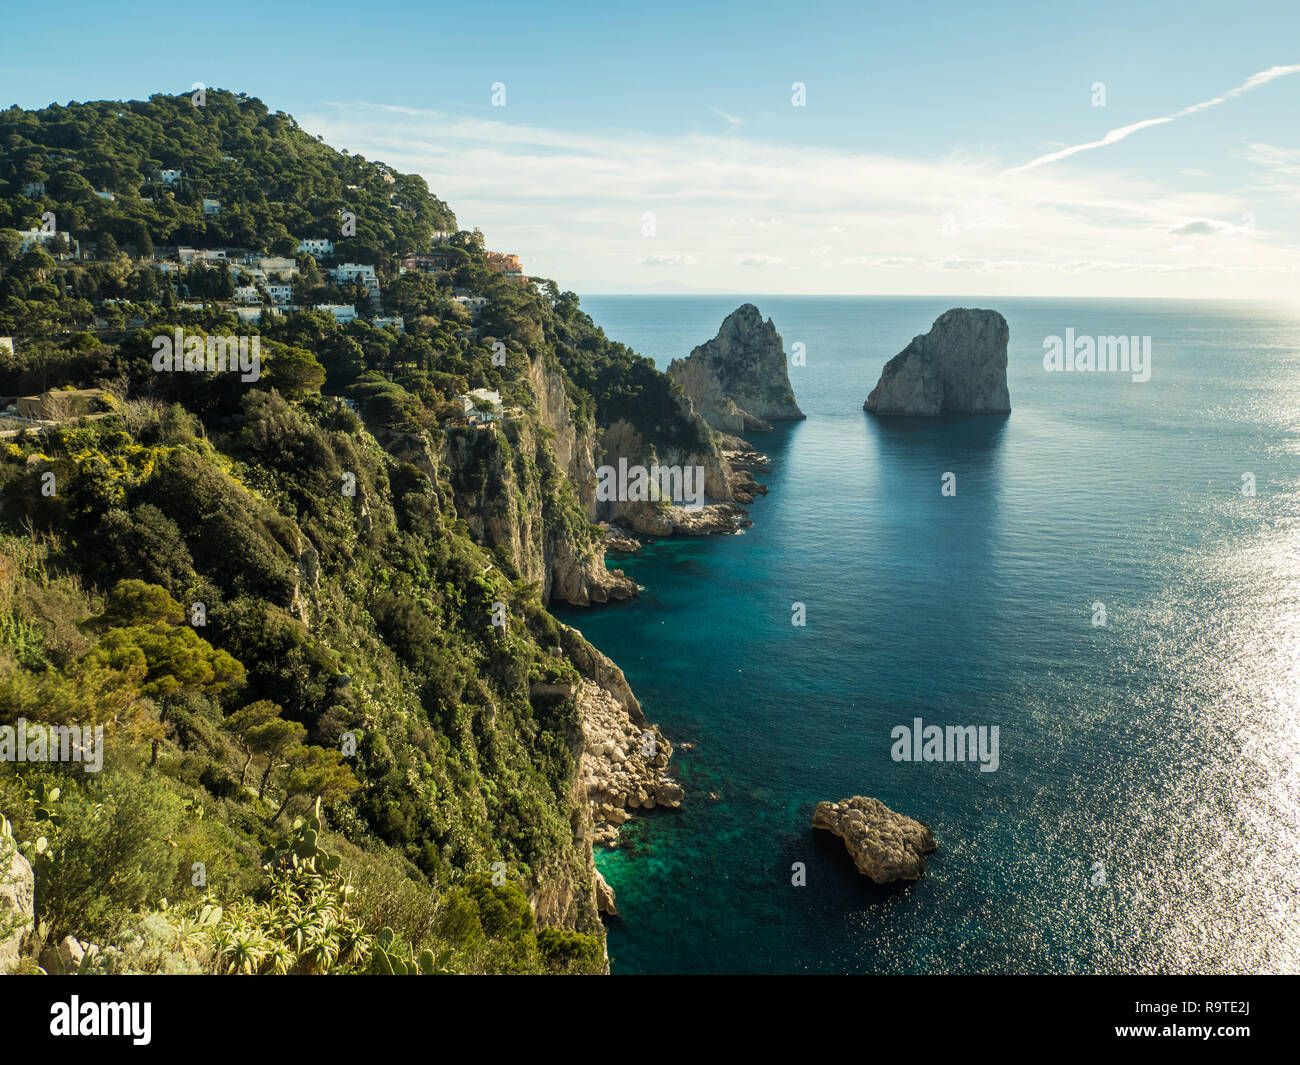 Faraglioni sull' isola di Capri in Campania, Italia Foto Stock